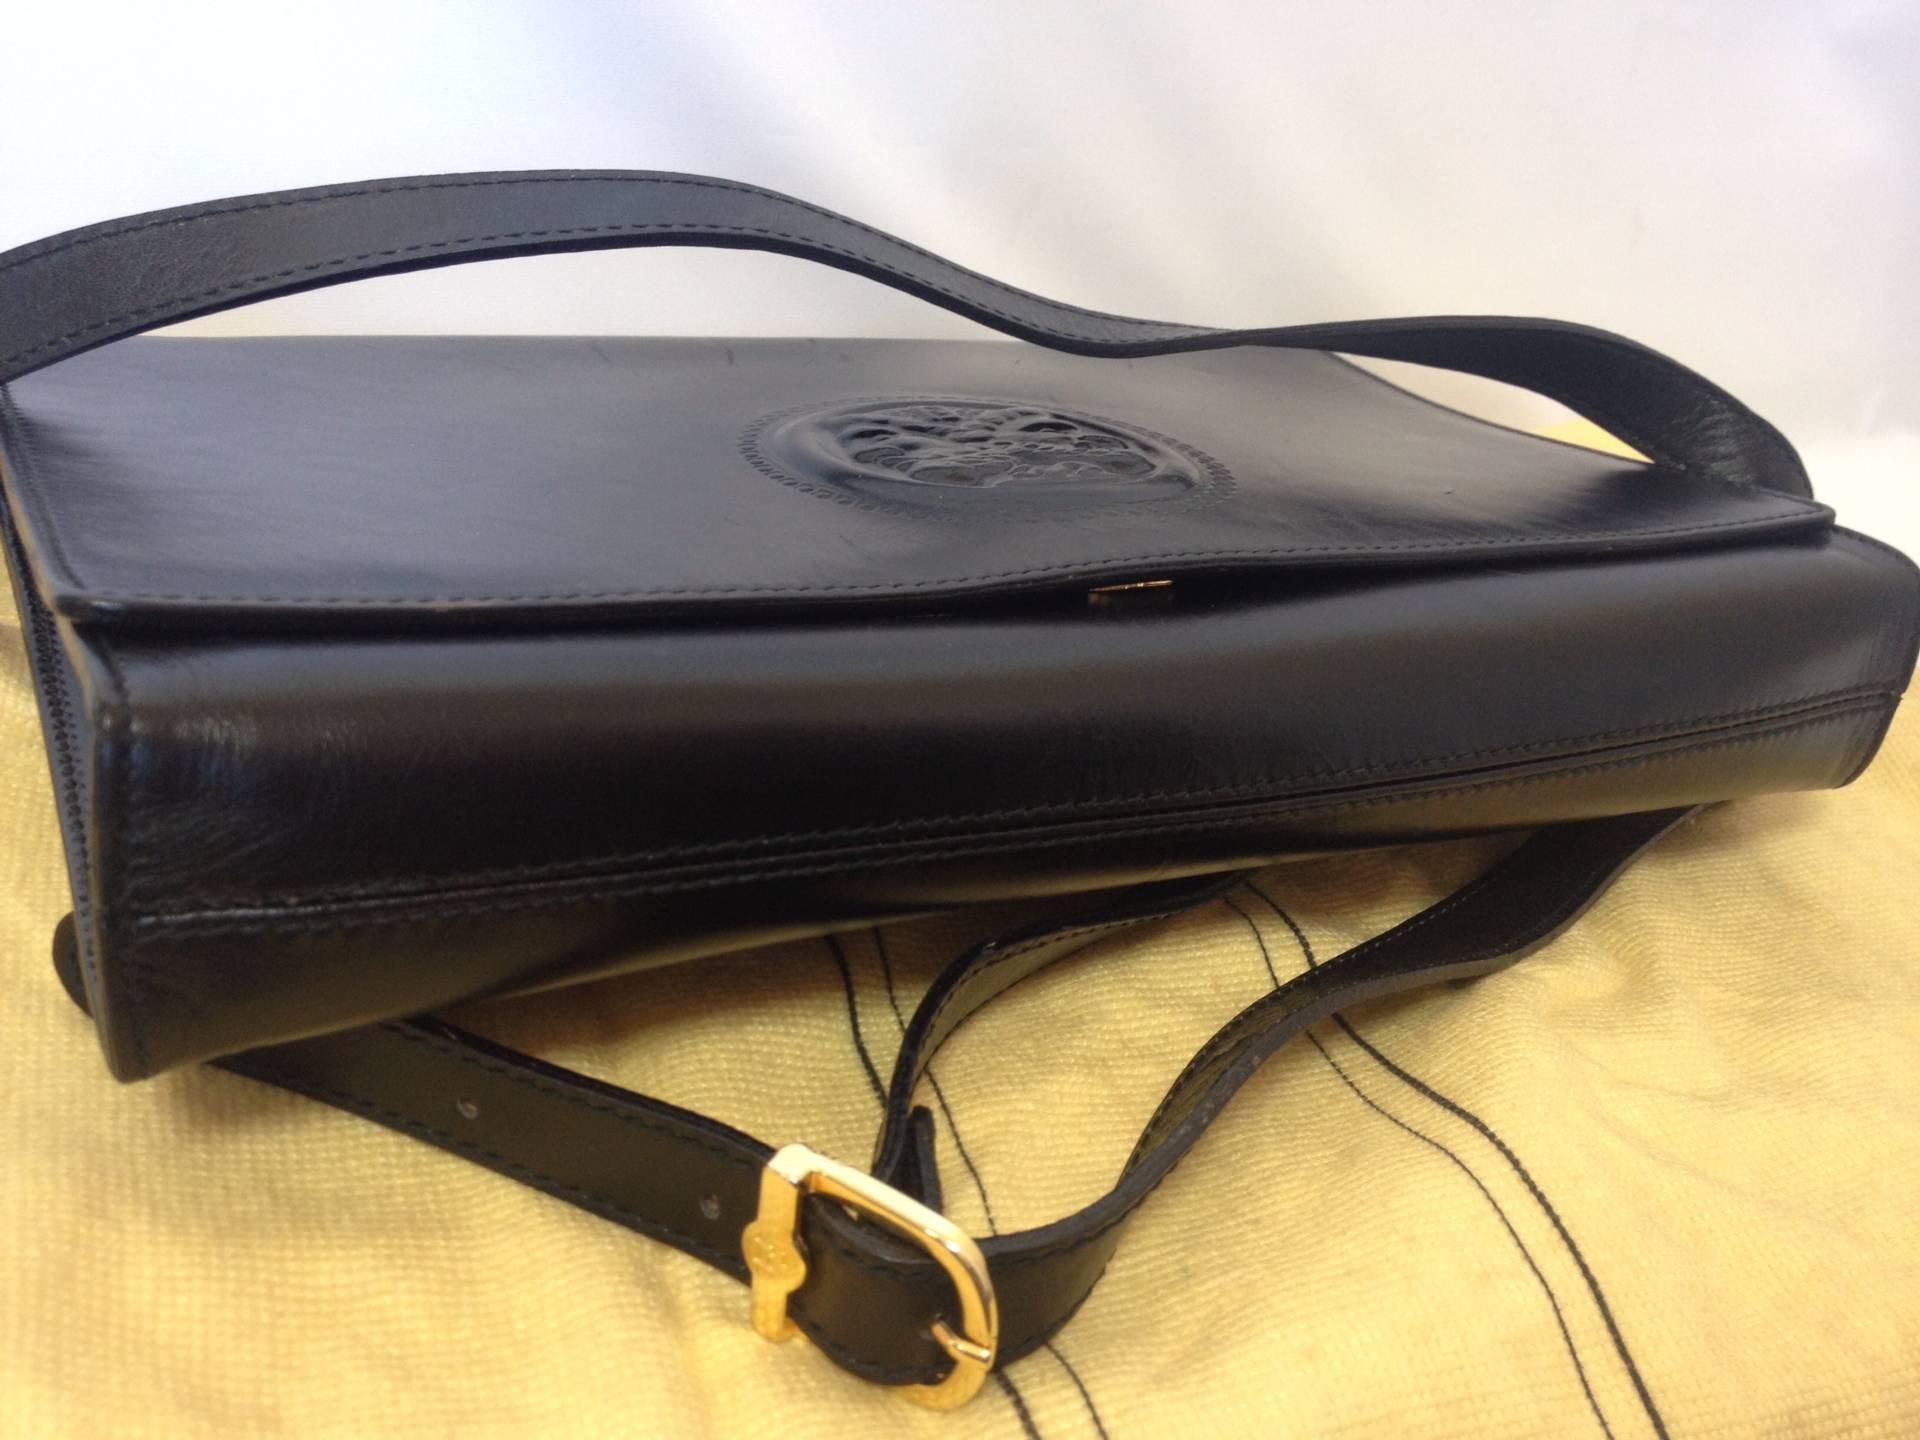 Vintage FENDI black leather shoulder bag, large clutch purse with iconic logo  1